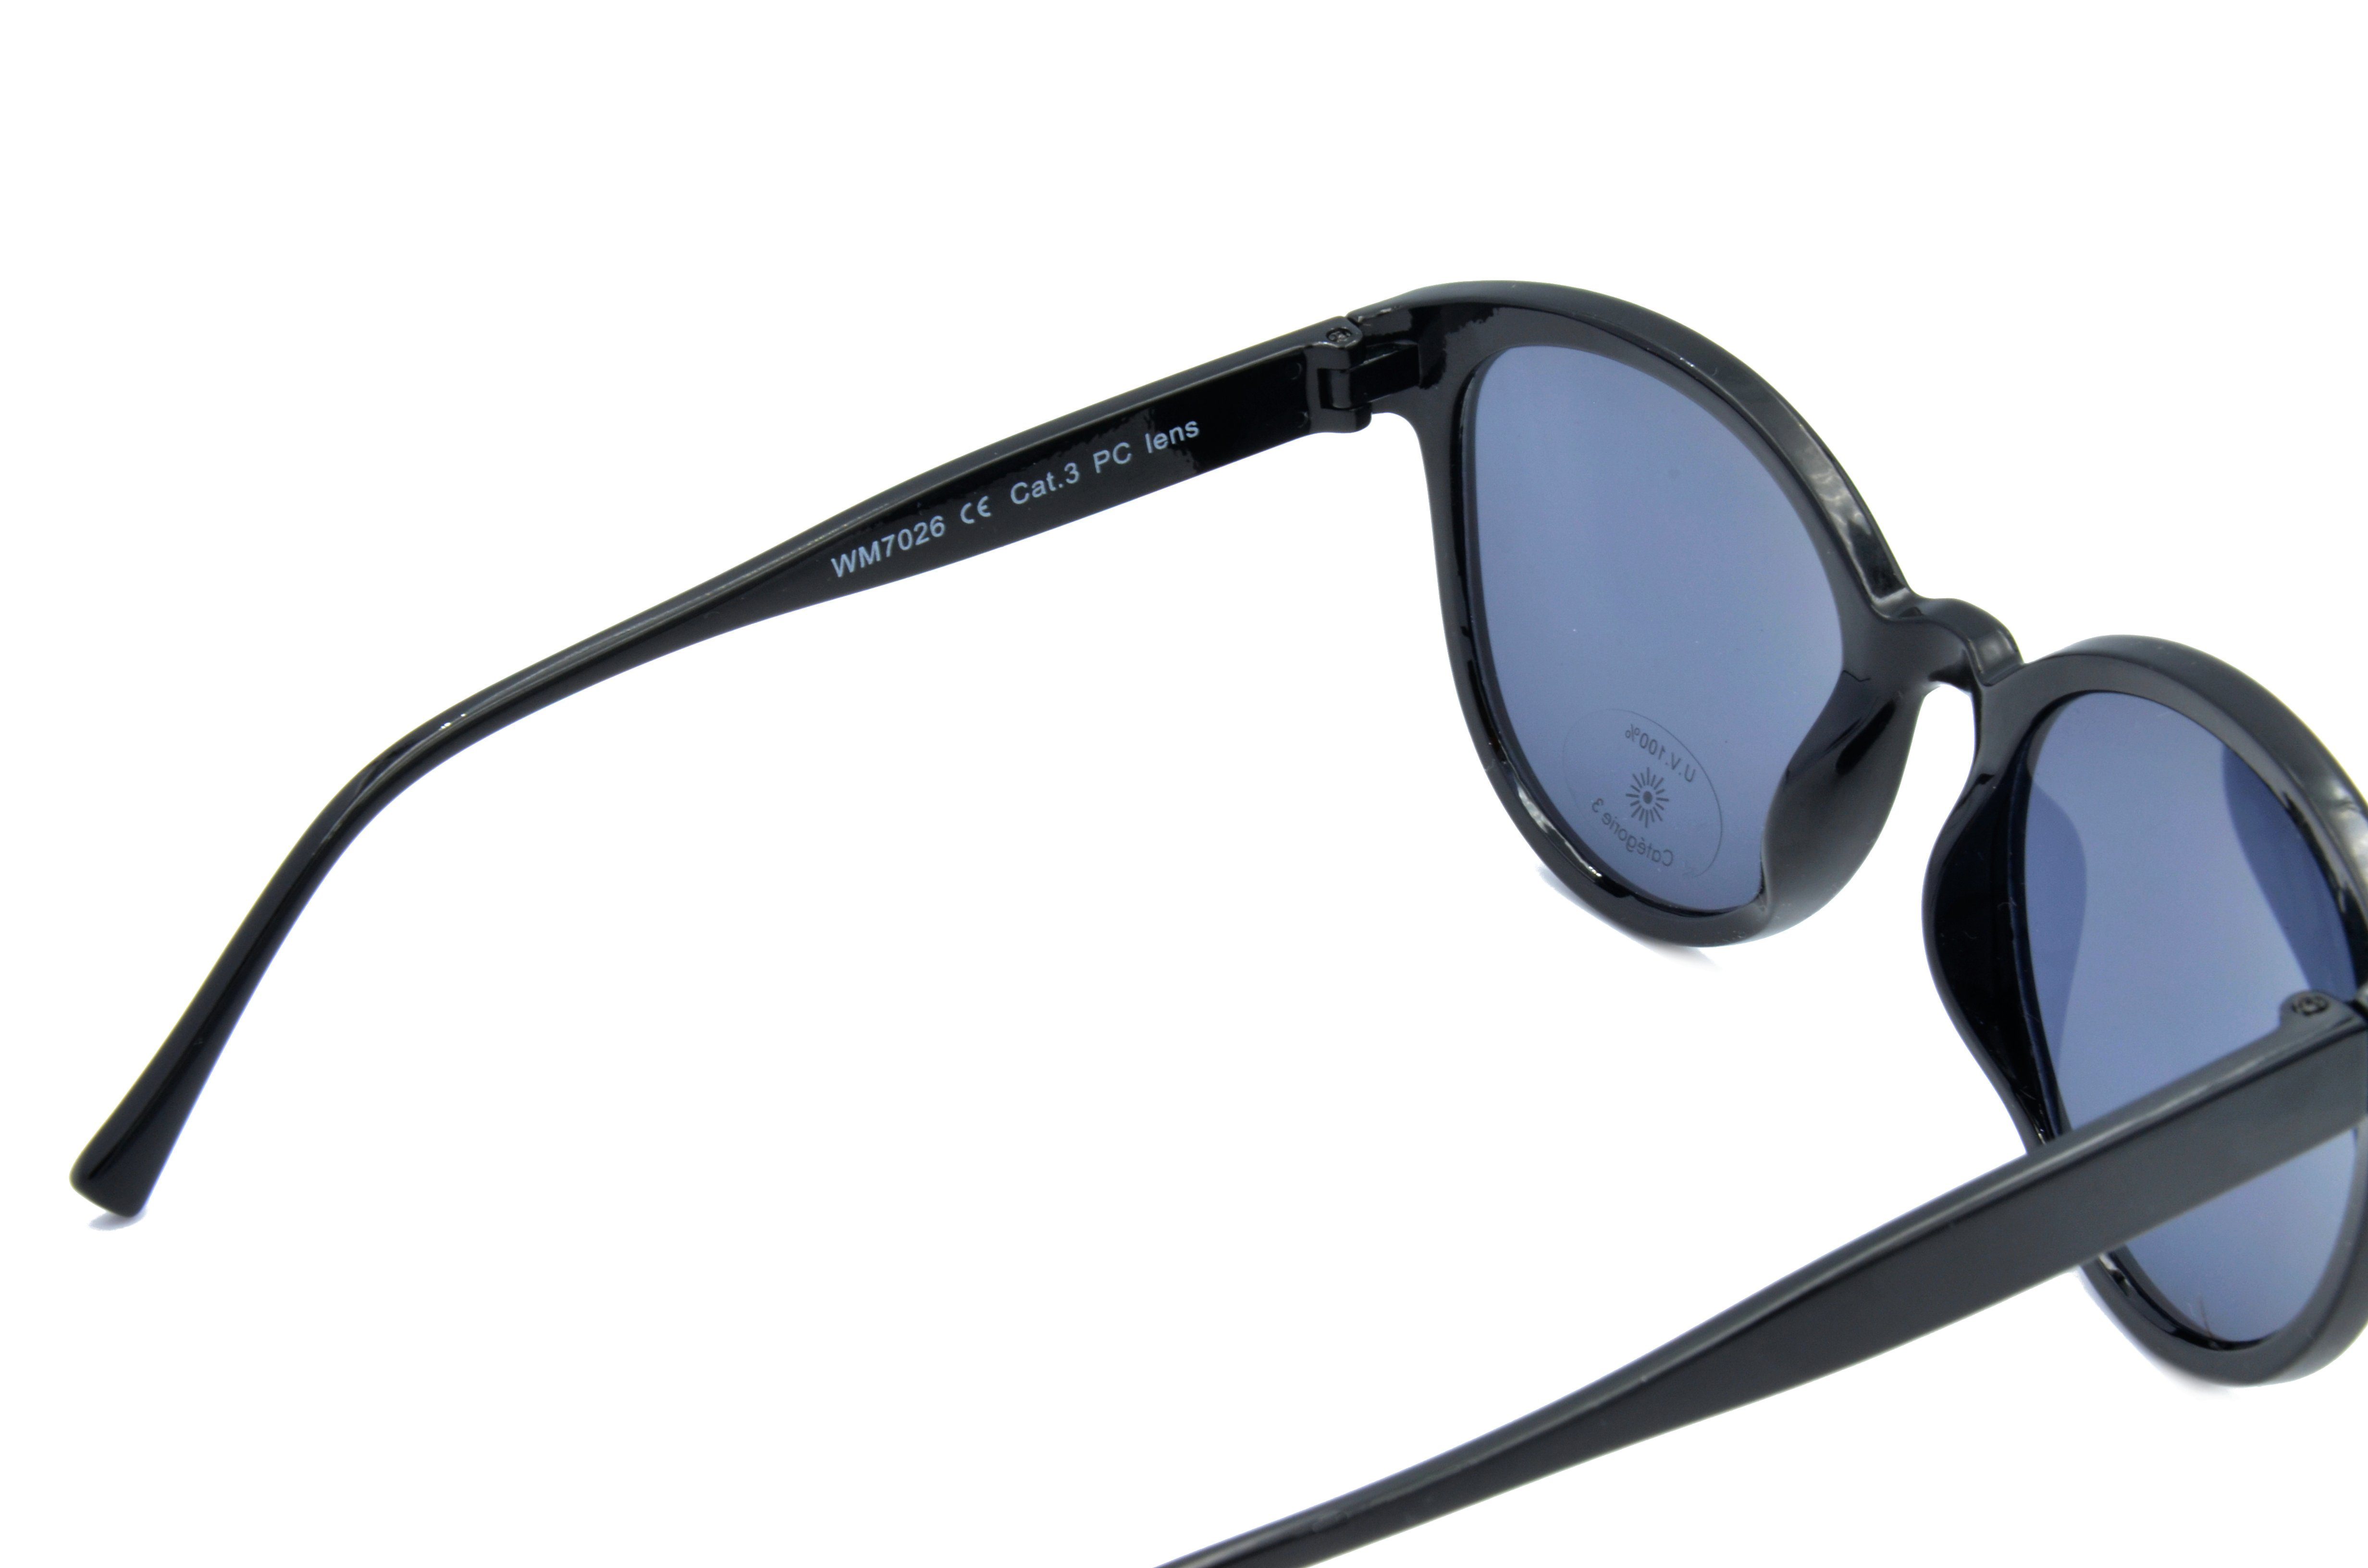 Sonnenbrille Gamswild schwarz "Pianolackoptik", Mode WM7026 GAMSSTYLE Damen Brille